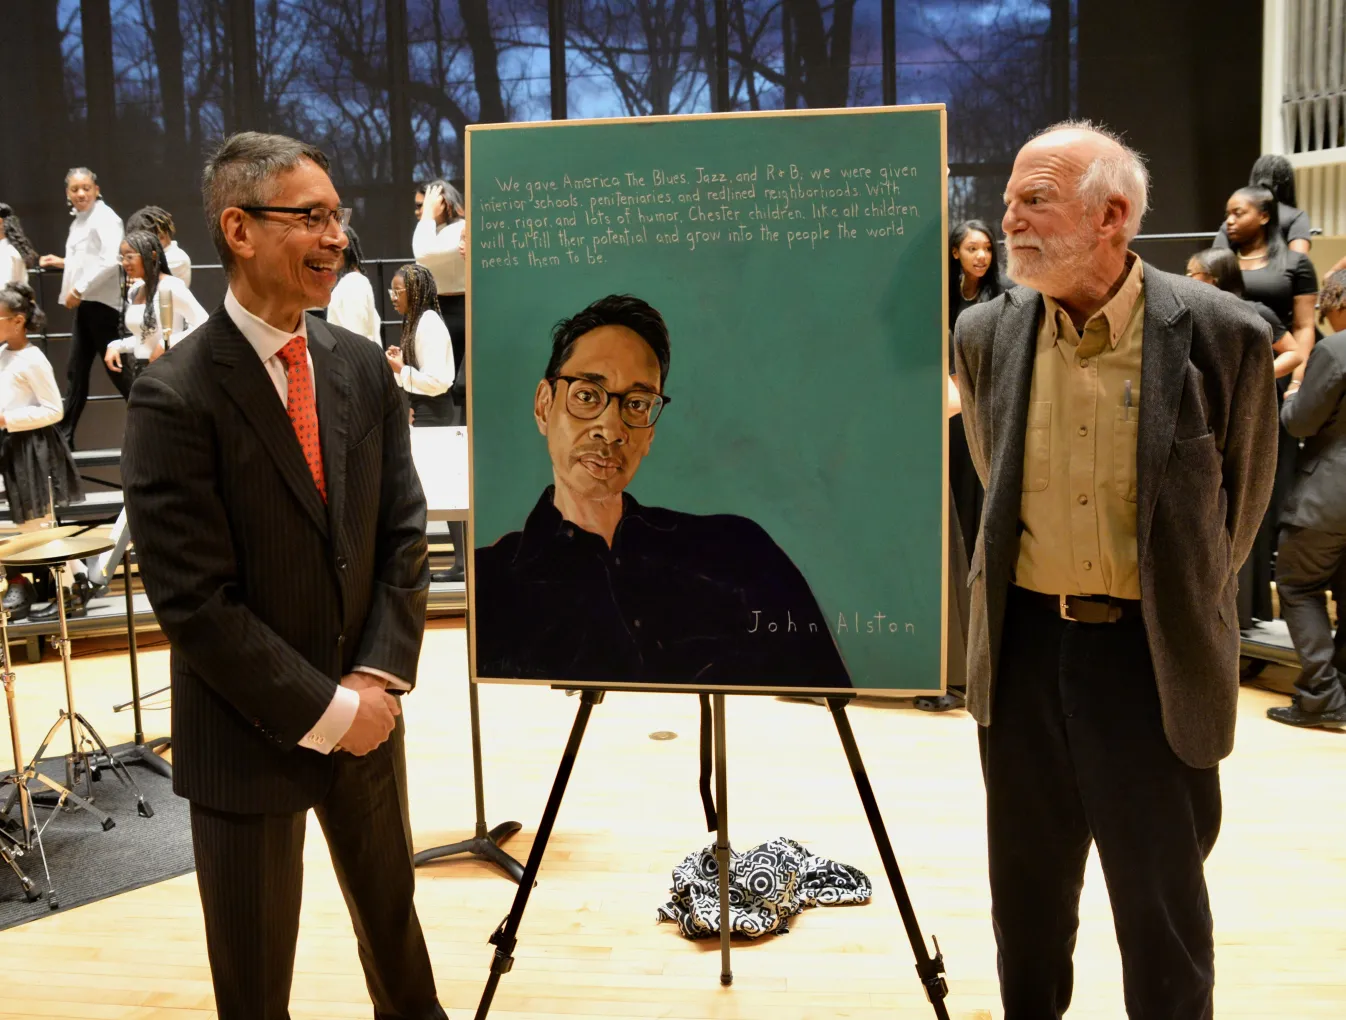 John Alston and Robert Shetterly standing in front of John Alston's portrait on easel